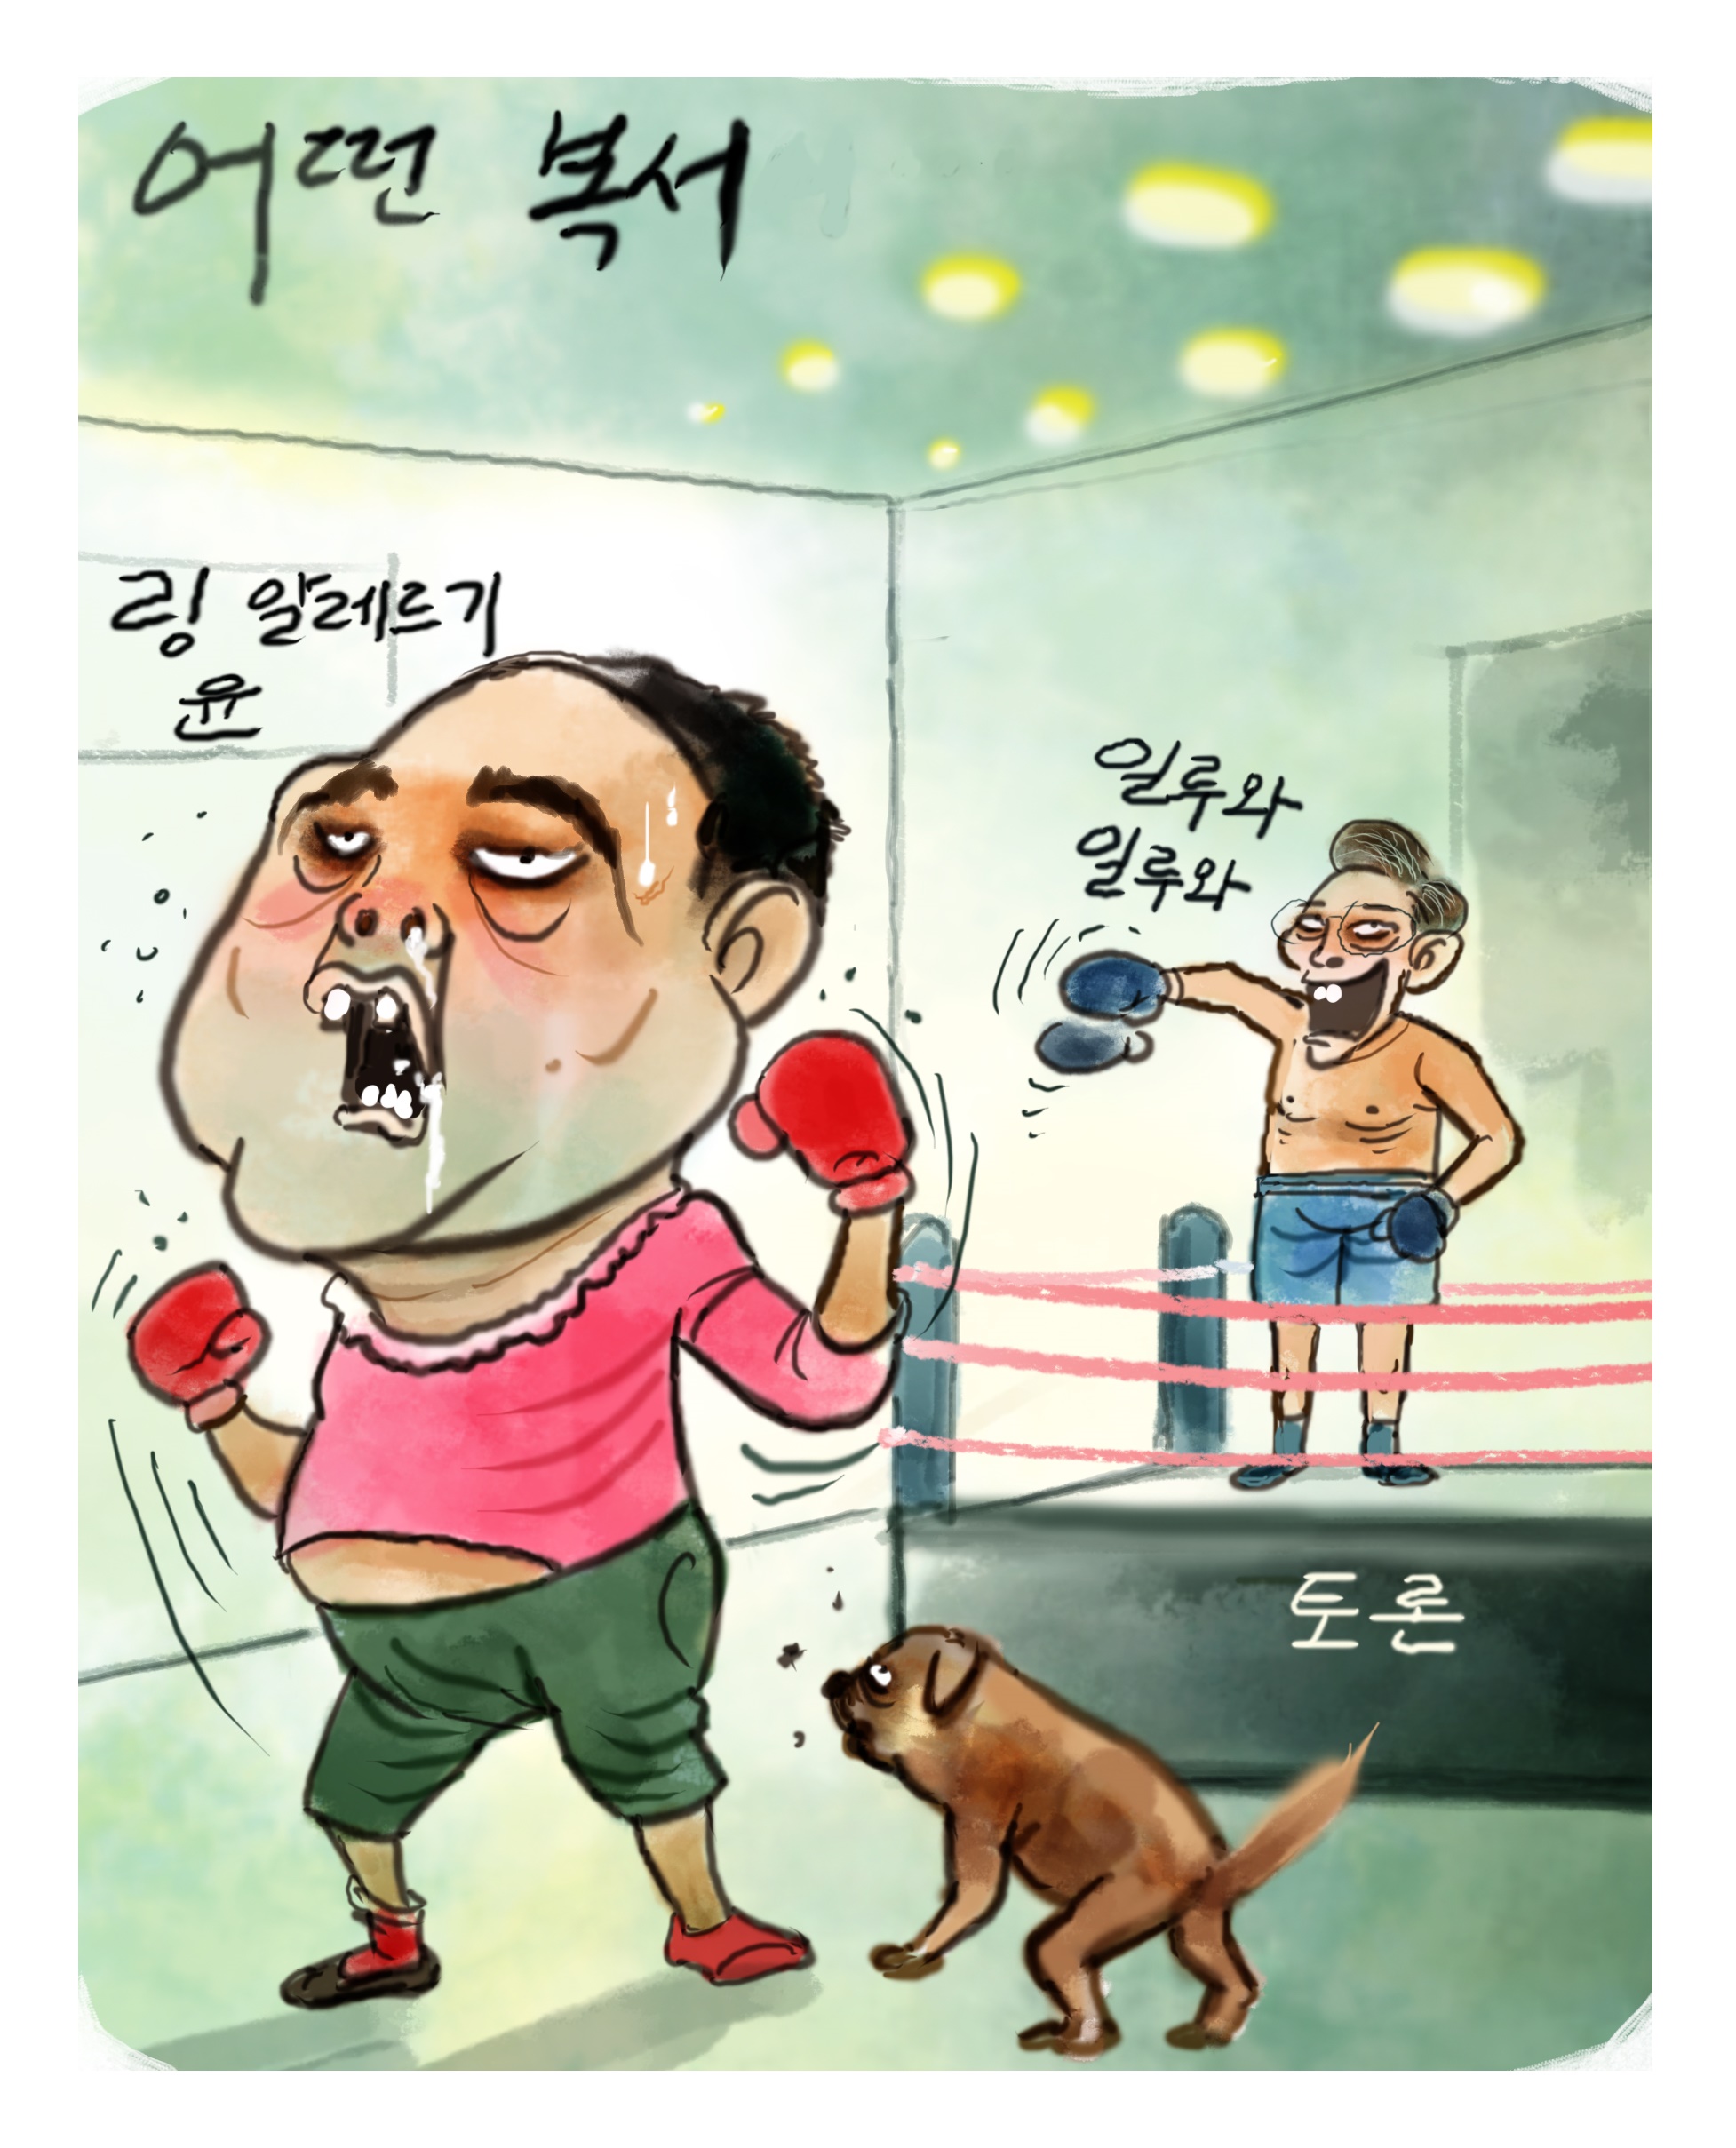 [민평] 윤석열 선수의 토론 기피